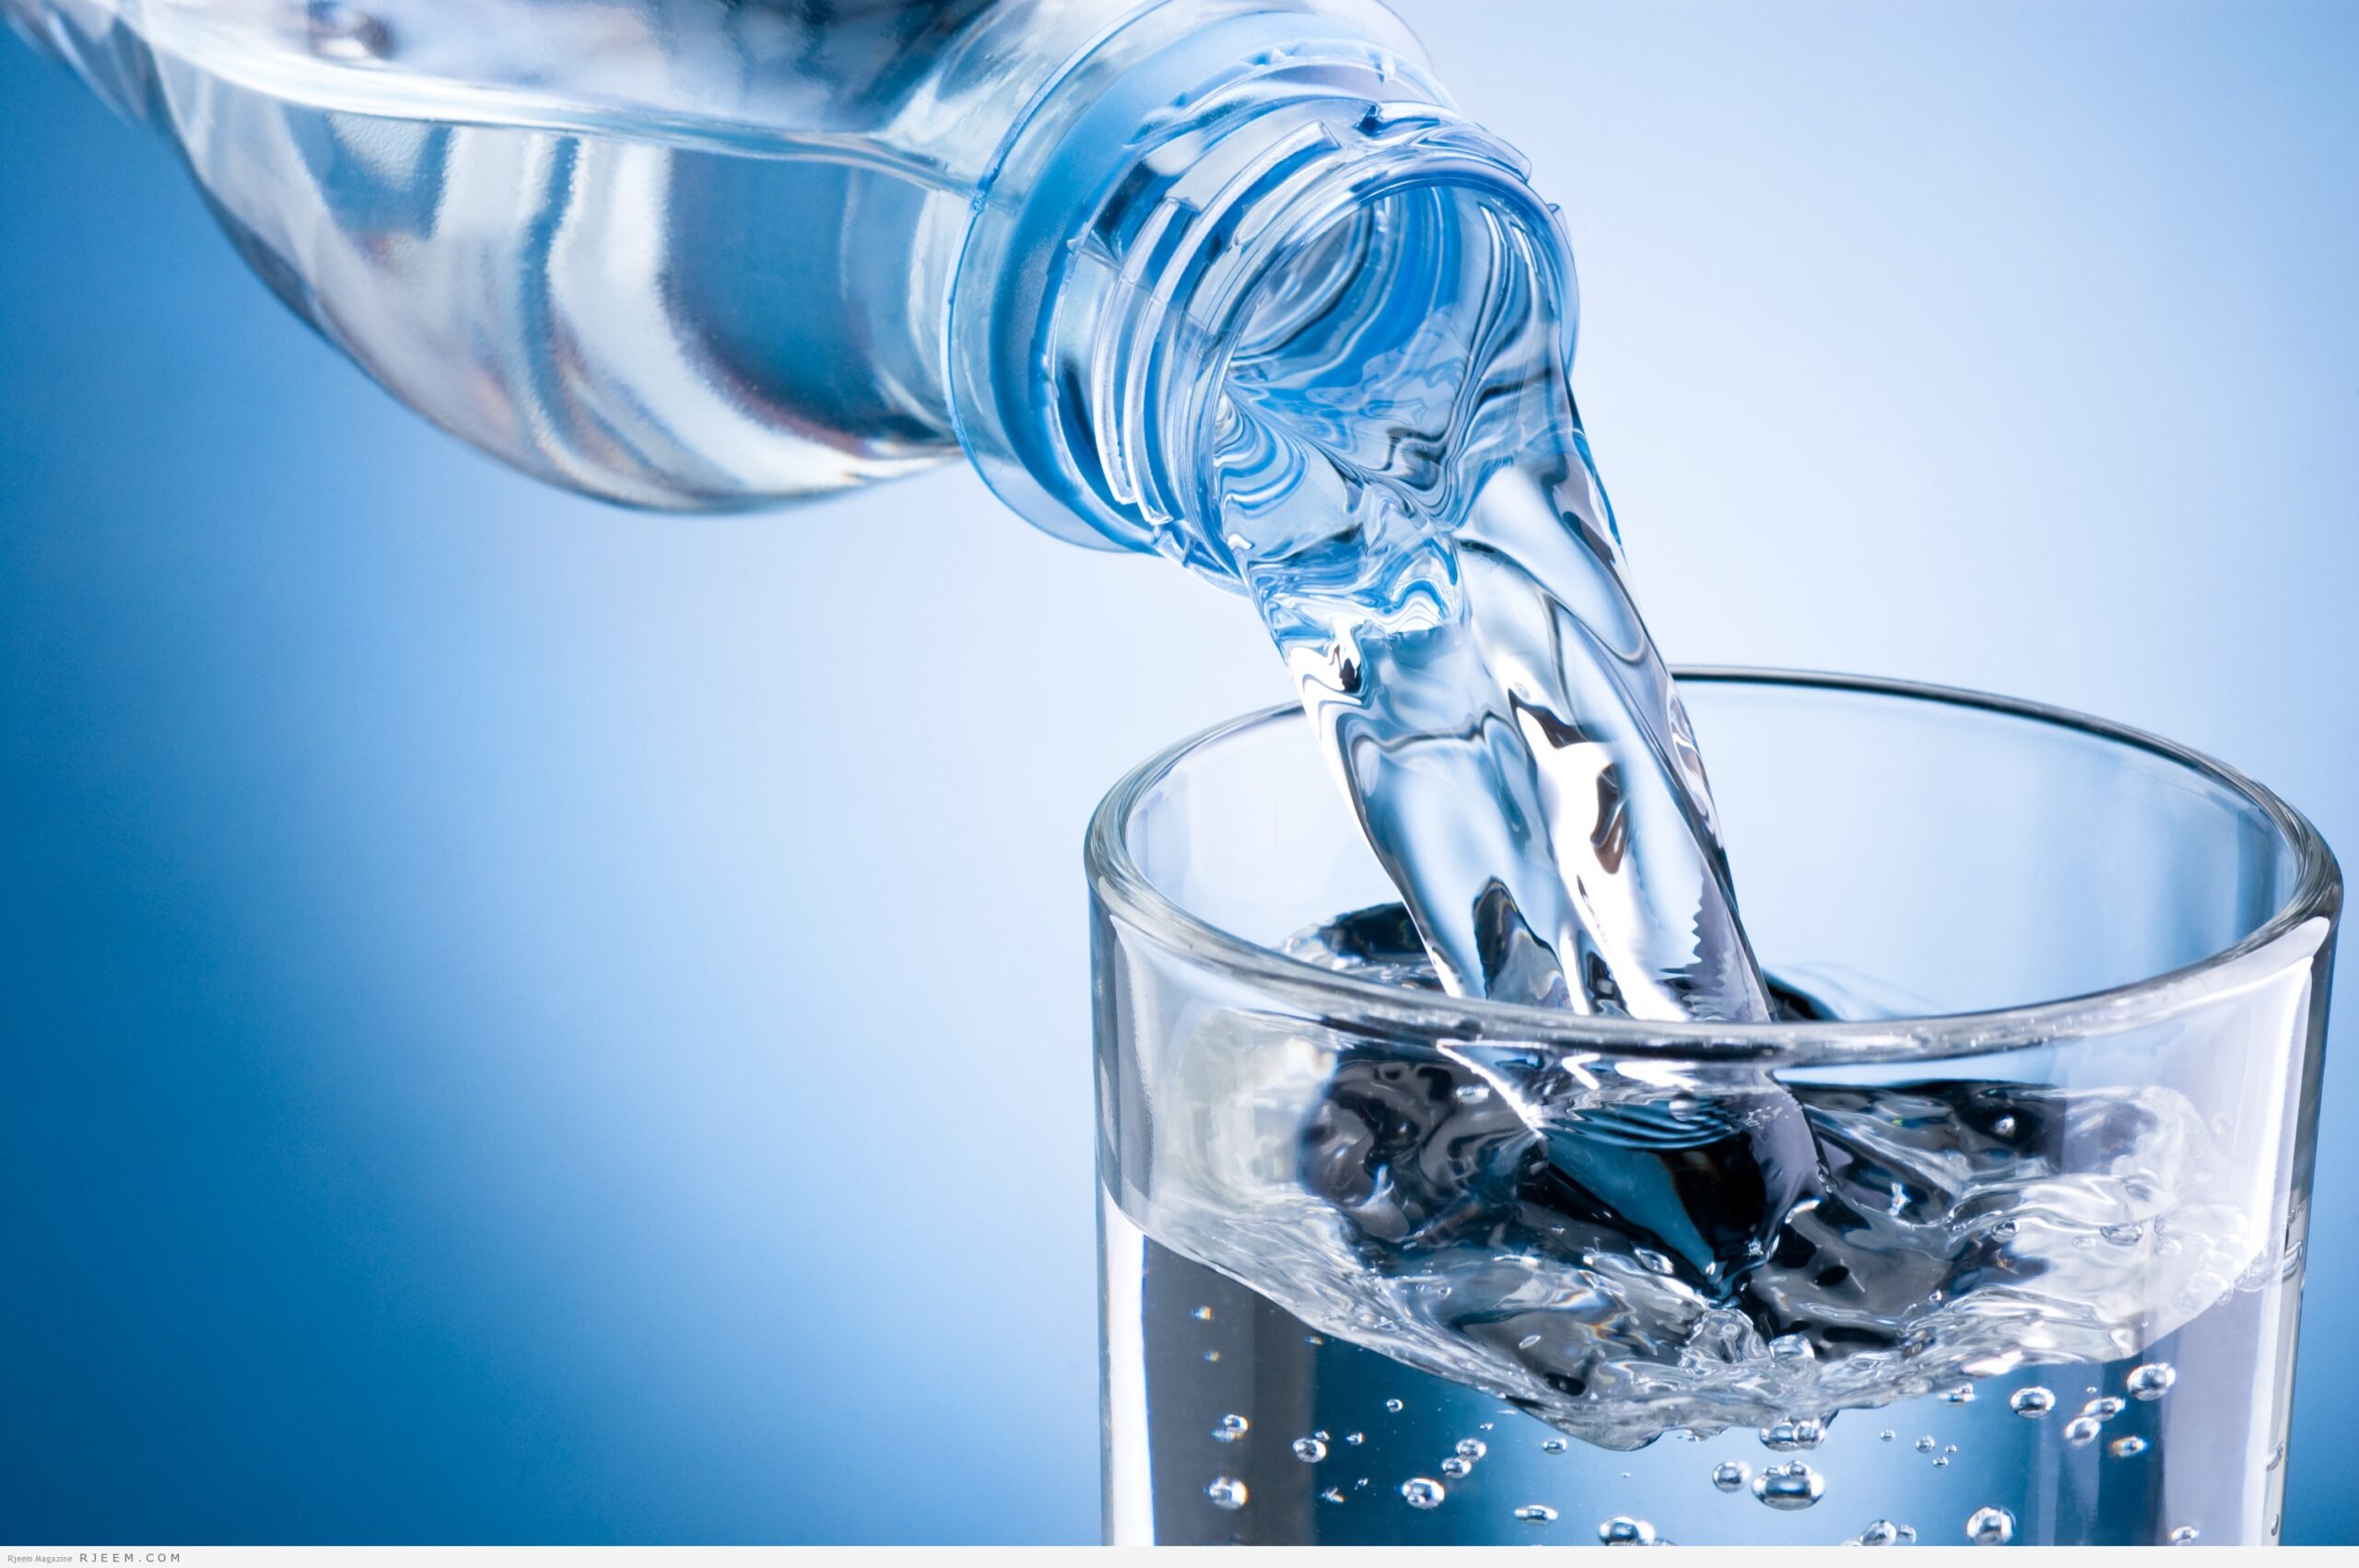 رجيم الماء لتخسيس الجسم 10 كيلو في أسبوع دون حرمان ونصائح للحفاظ على الوزن المفقود